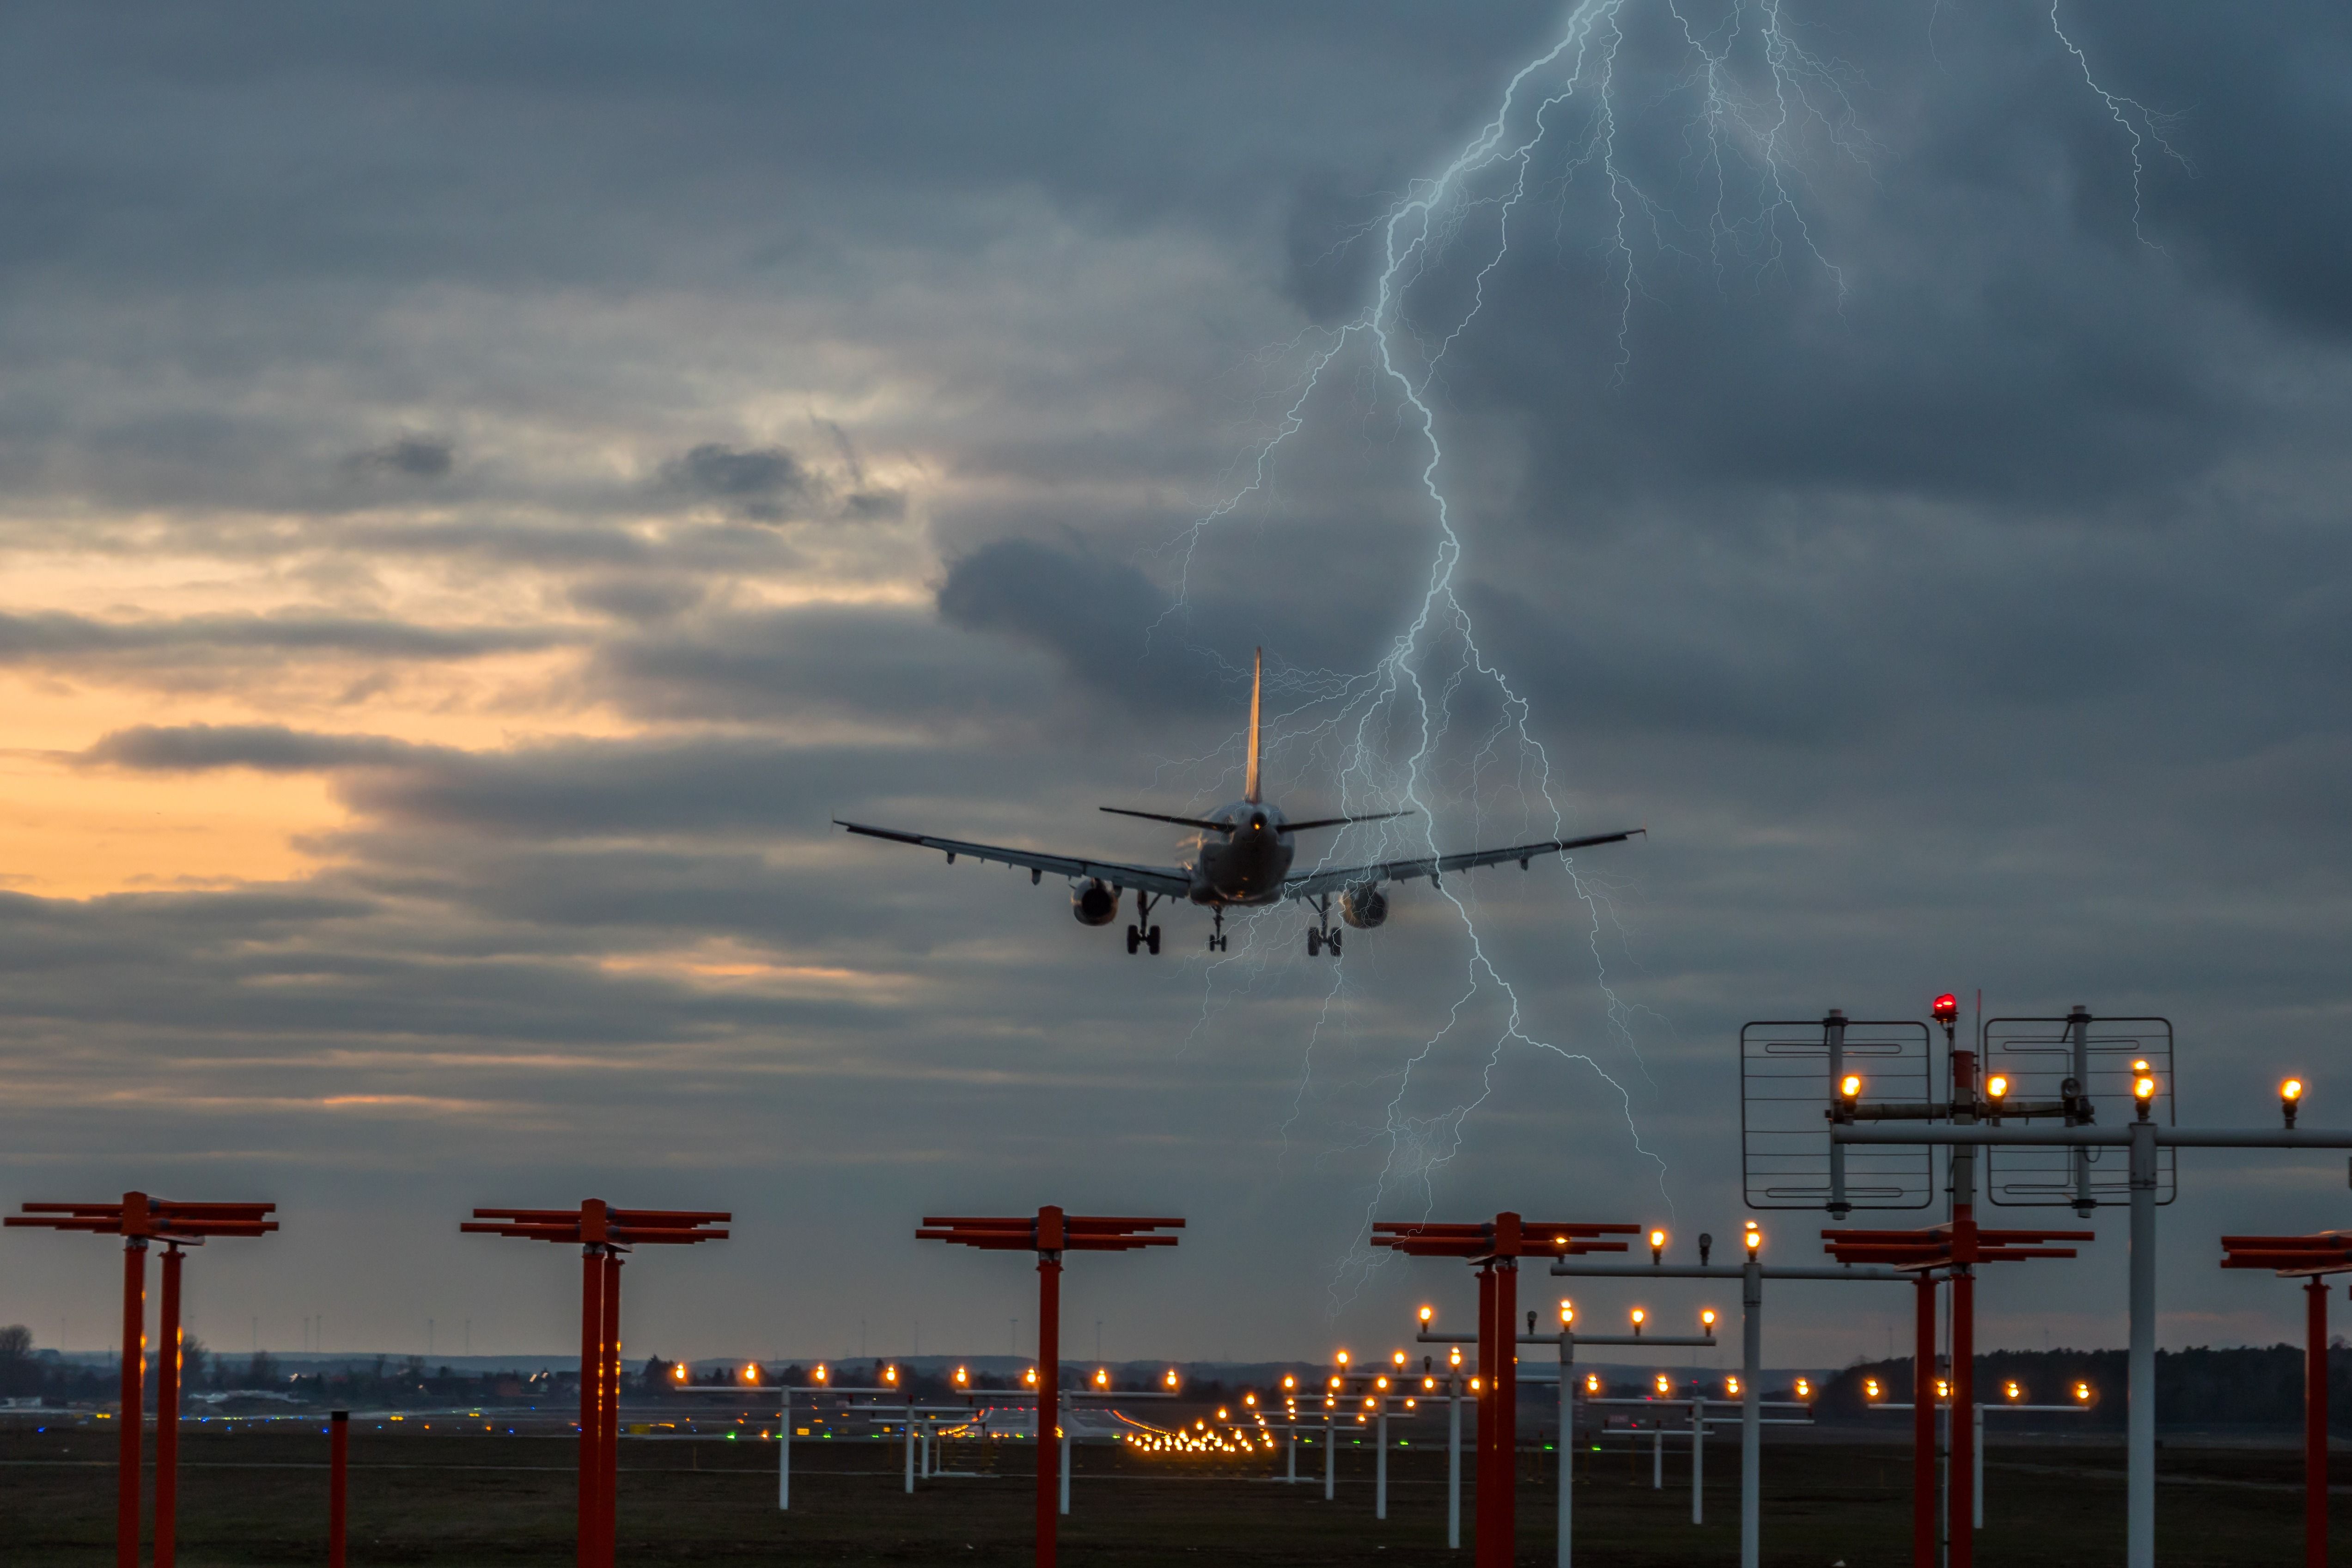 An Aircraft landing during a thundersorm.